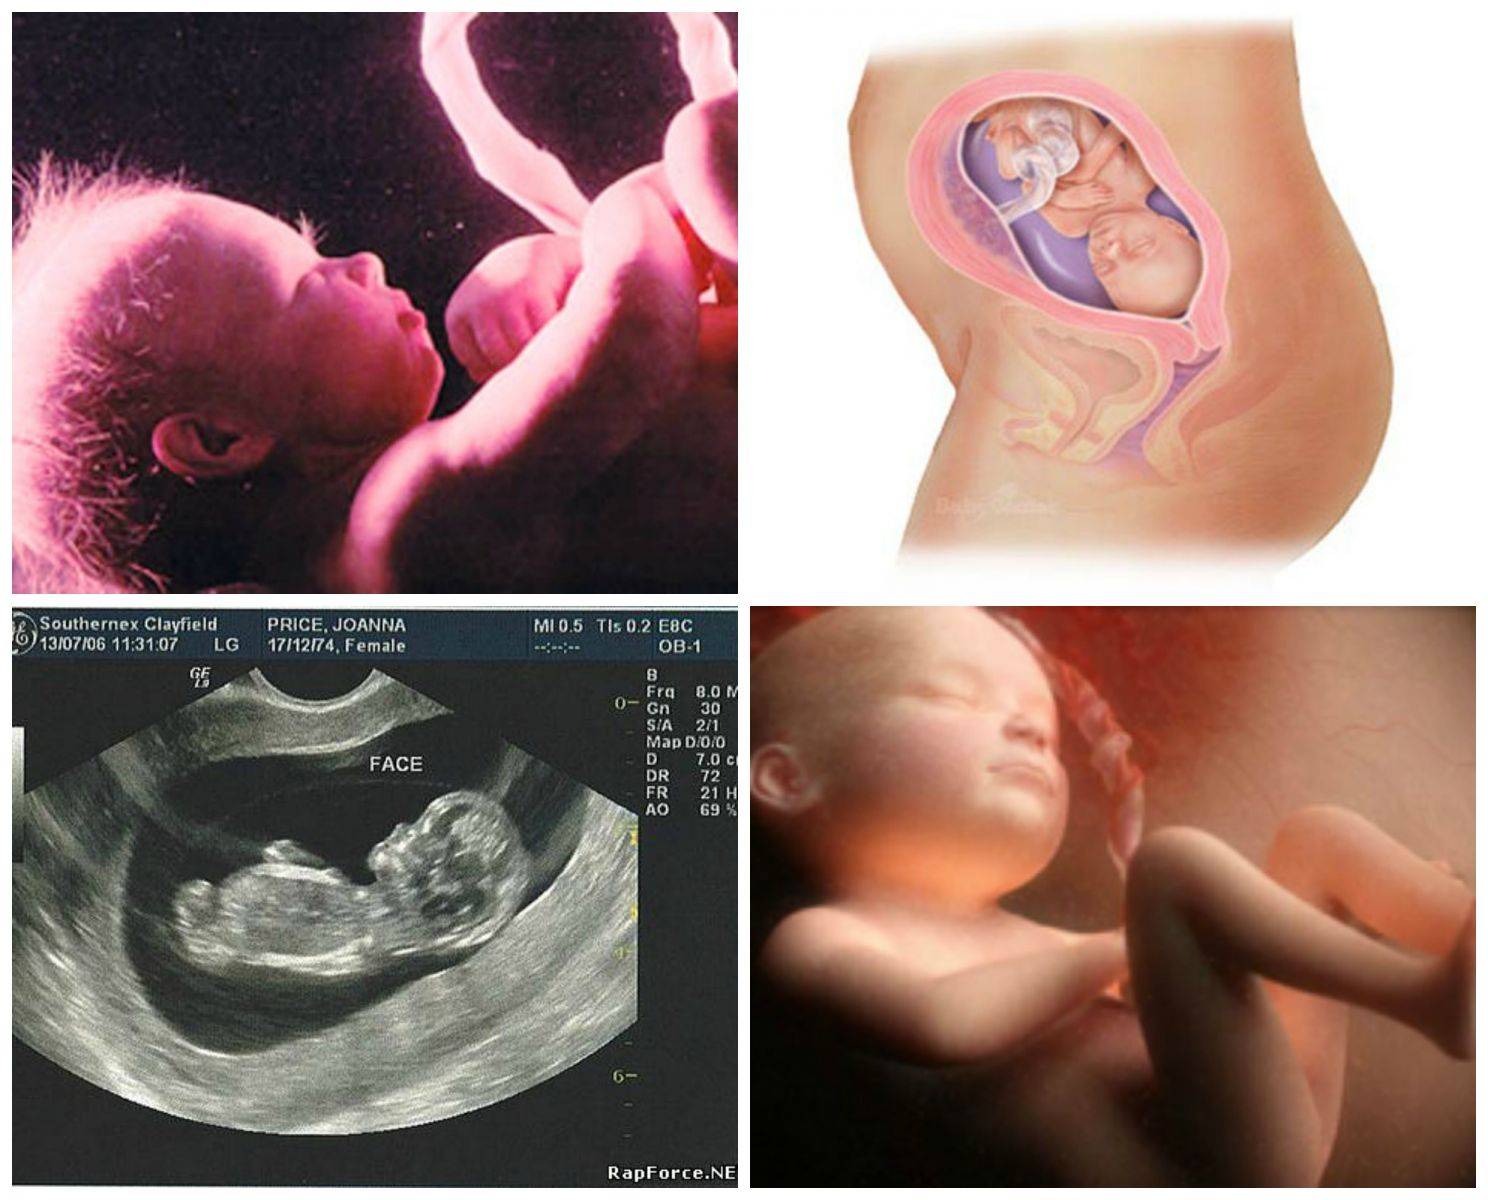 27 неделя беременности: ощущения, симптомы и основные признаки развития плода, медицинские рекомендации и обследования